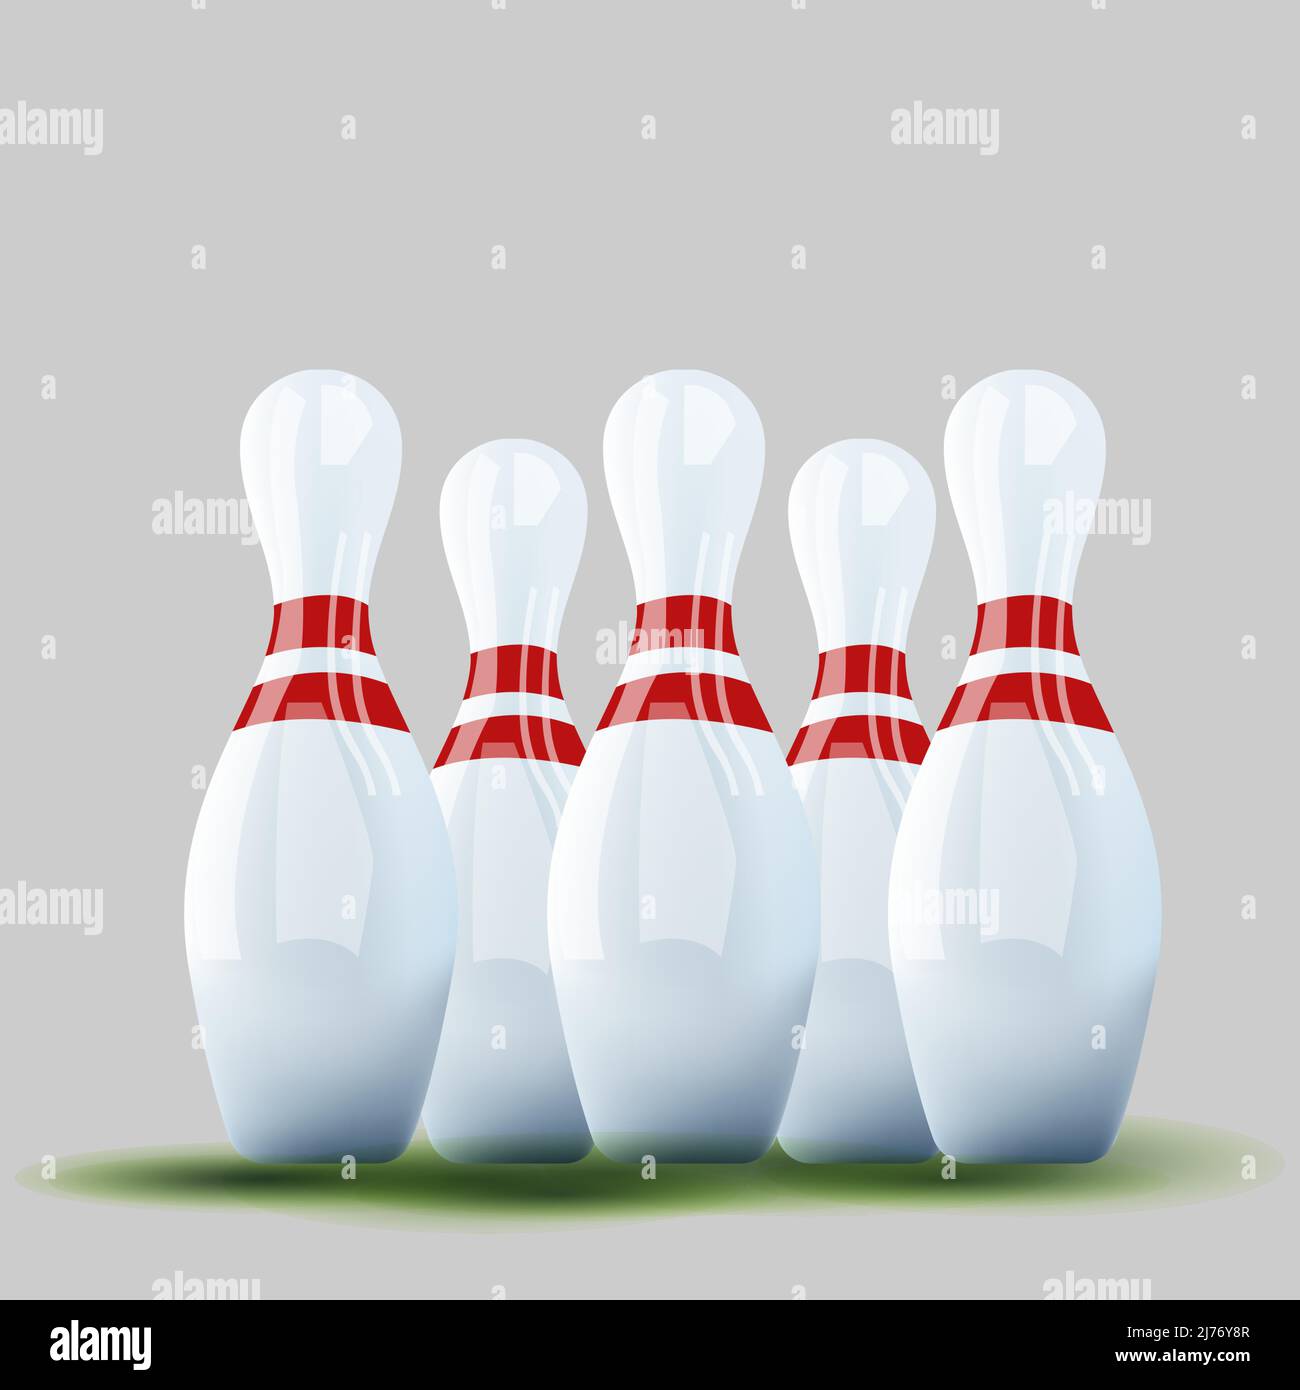 Gruppe von 3D realistischen Bowling Pins Kegeln mit roten Streifen Stock Vektor